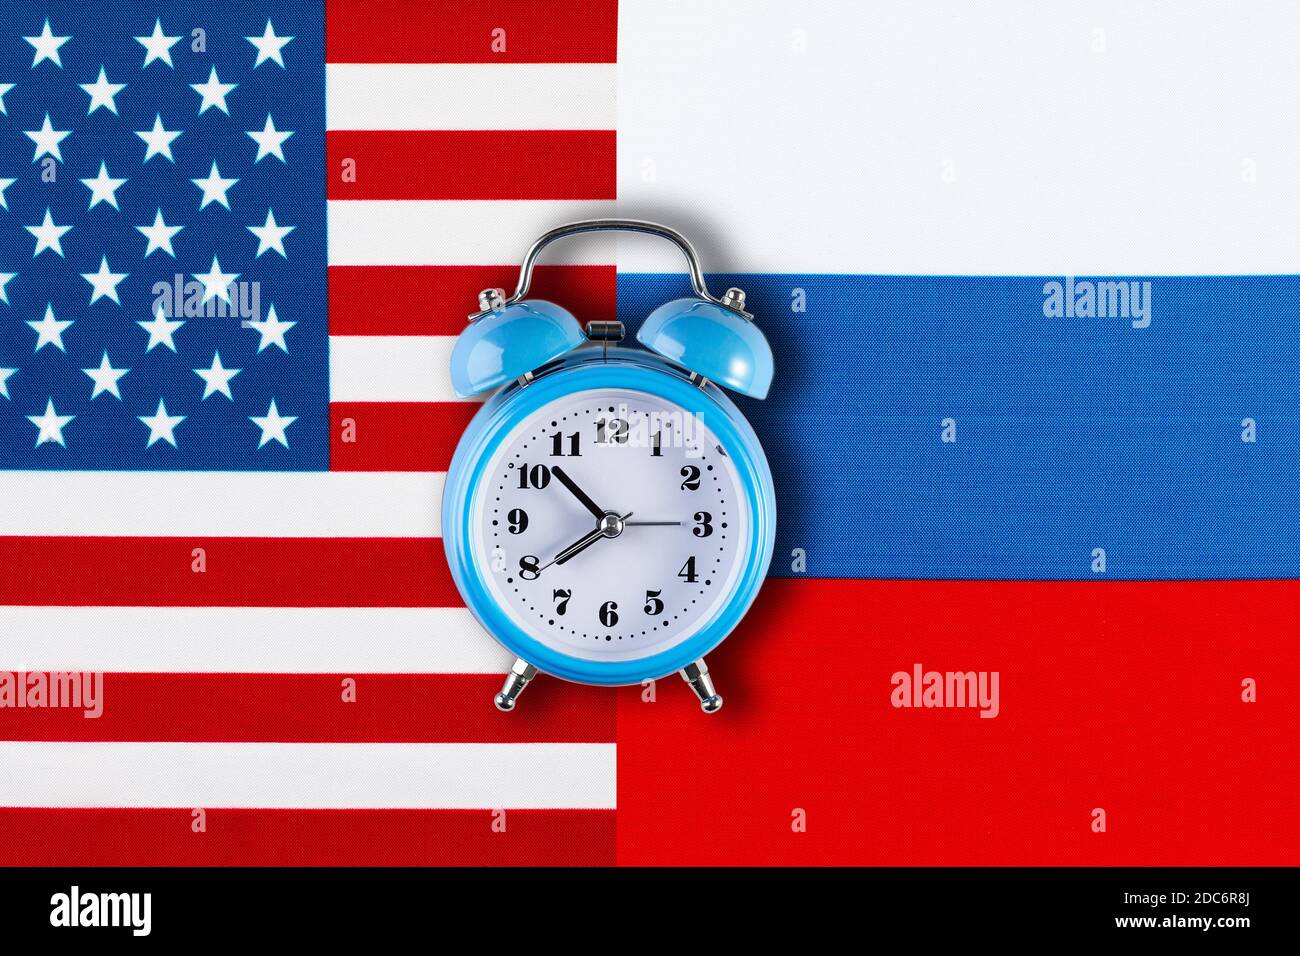 Russische und amerikanische Flaggen und die Uhr als Symbol der politischen Beziehungen. Kreative Draufsicht flat lay von Russland und USA Flagge Wecker. Konzept von Stockfoto